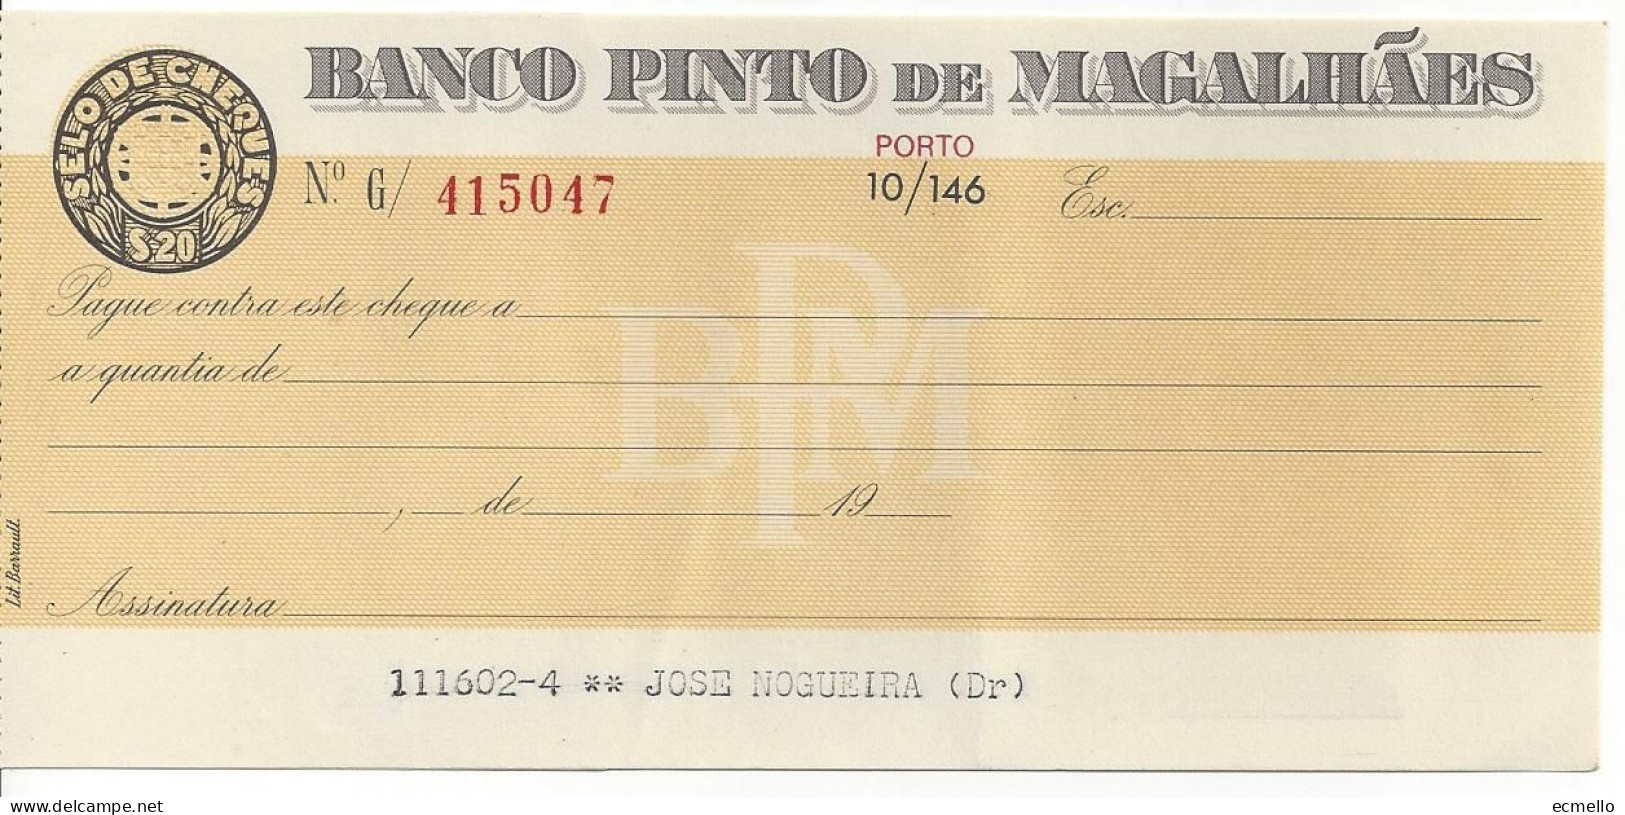 PORTUGAL CHEQUE CHECK BANCO PINTO DE MAGALHÃES PORTO 1970'S - Chèques & Chèques De Voyage